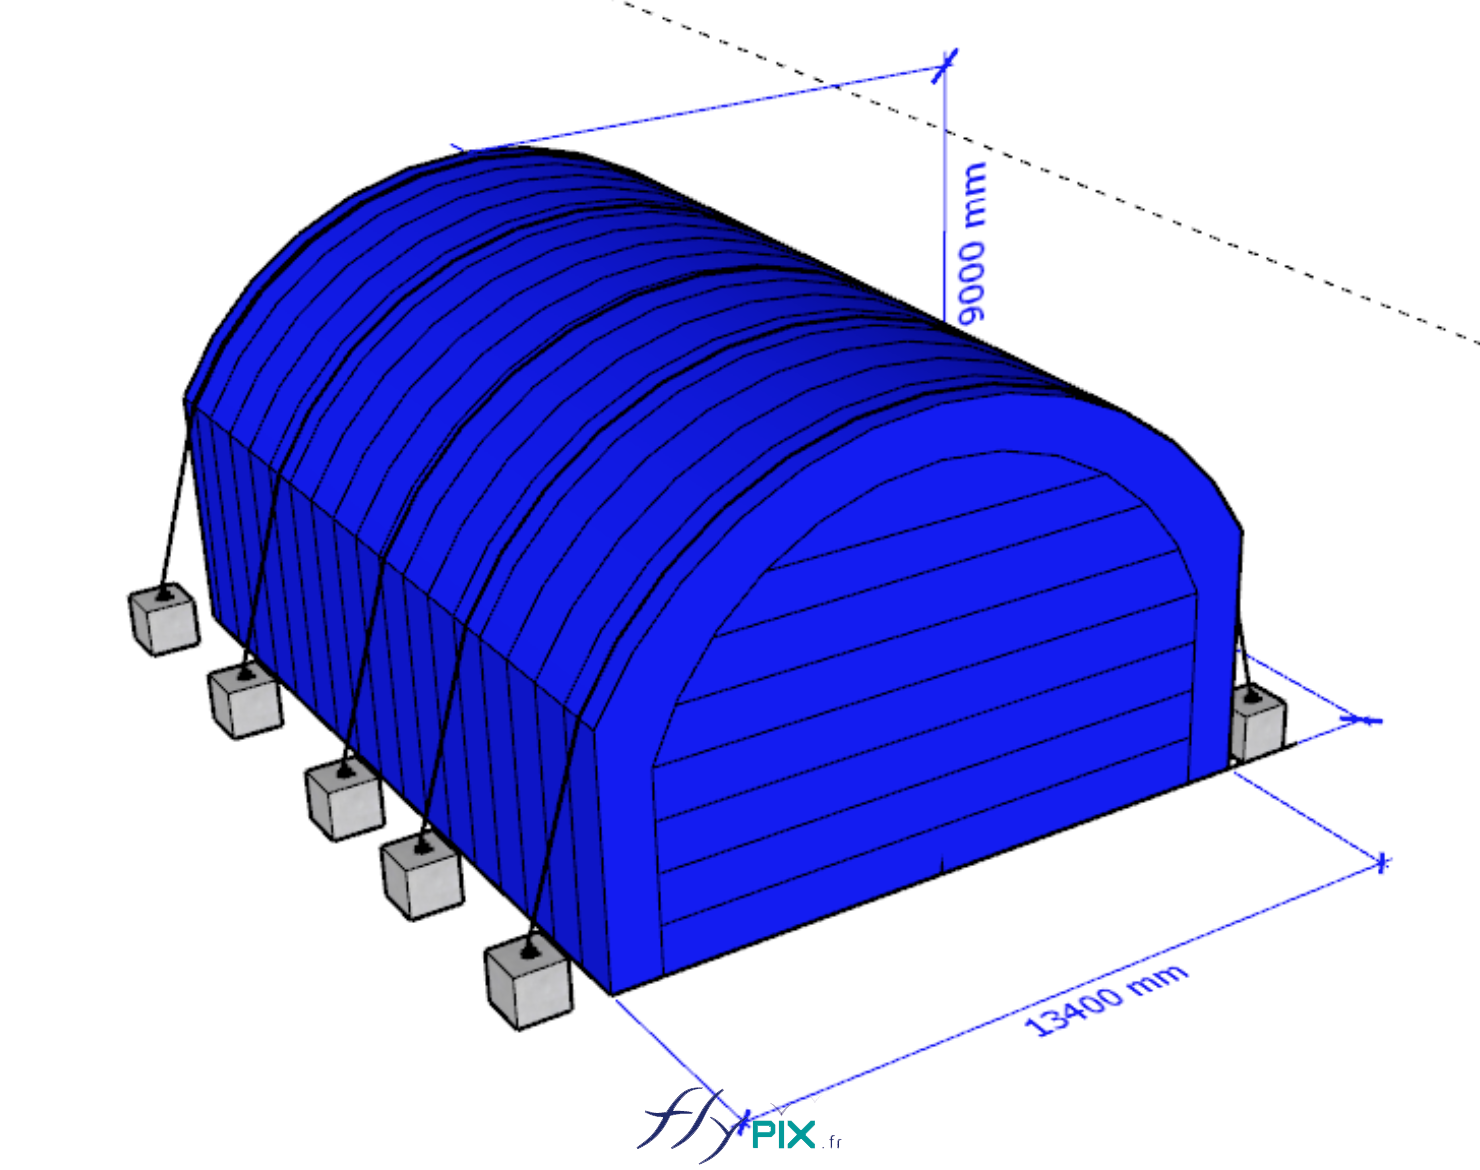 Modelisation 3D tente abri hangar industriel air captif PVC 06mm double peau capitonnee ALTRAD 1